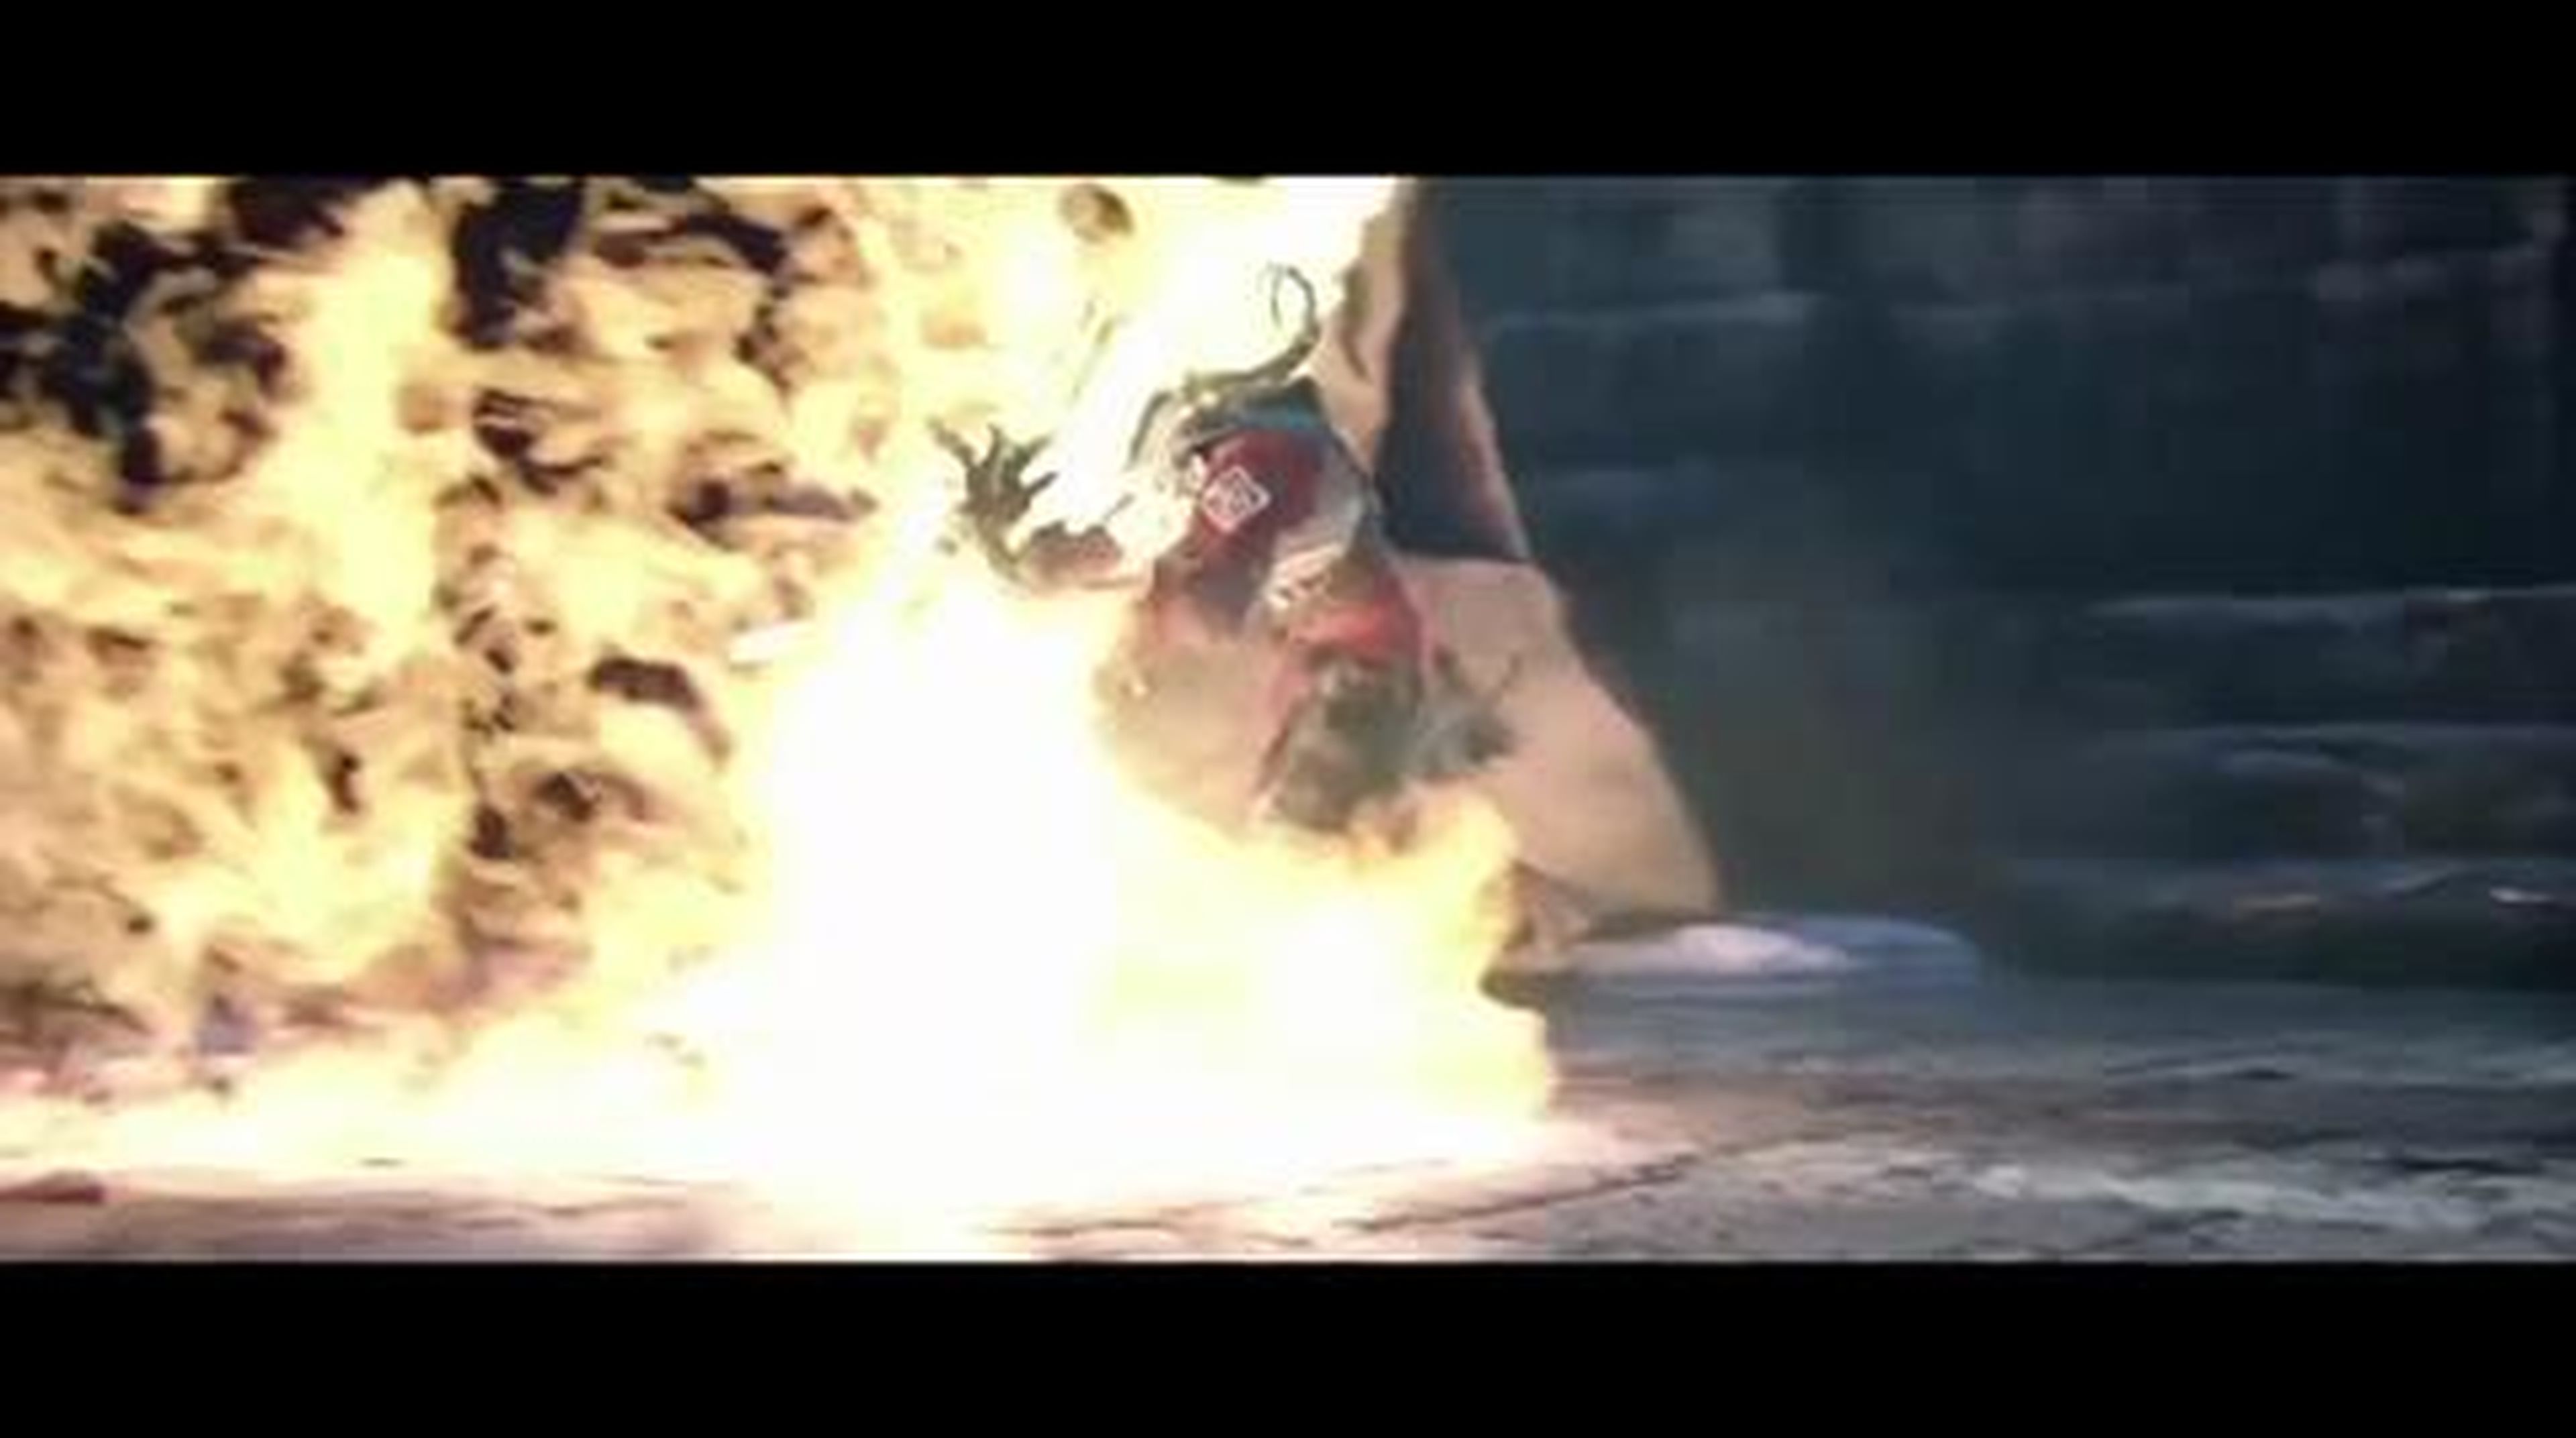 Dragon Age 2 Trailer